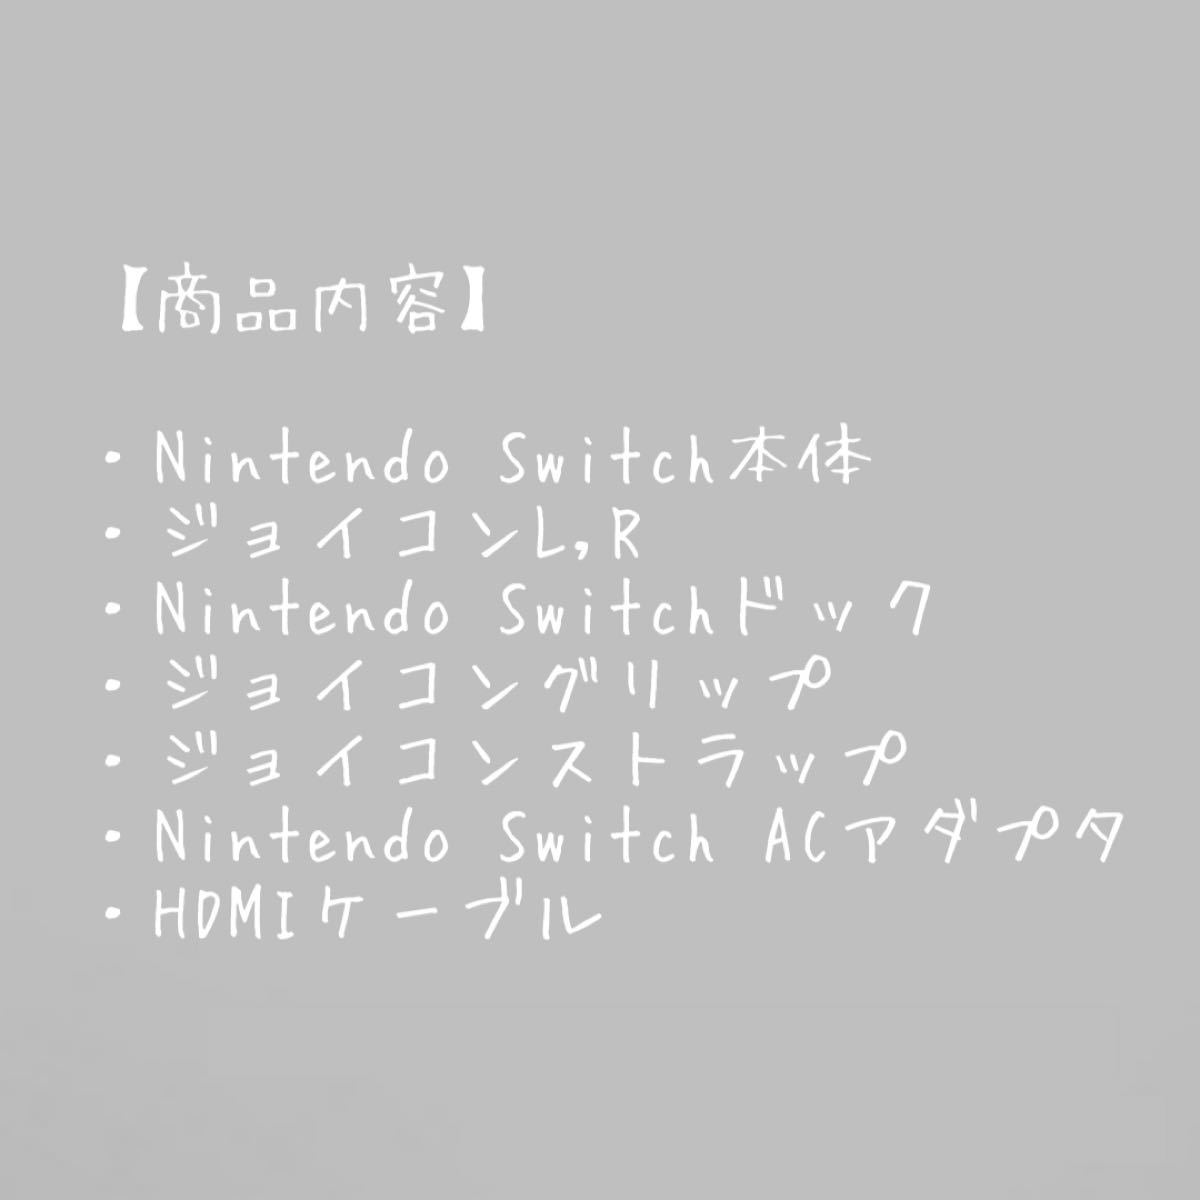 Nintendo Switch 任天堂スイッチ ニンテンドースイッチ ニンテンドースイッチ本体